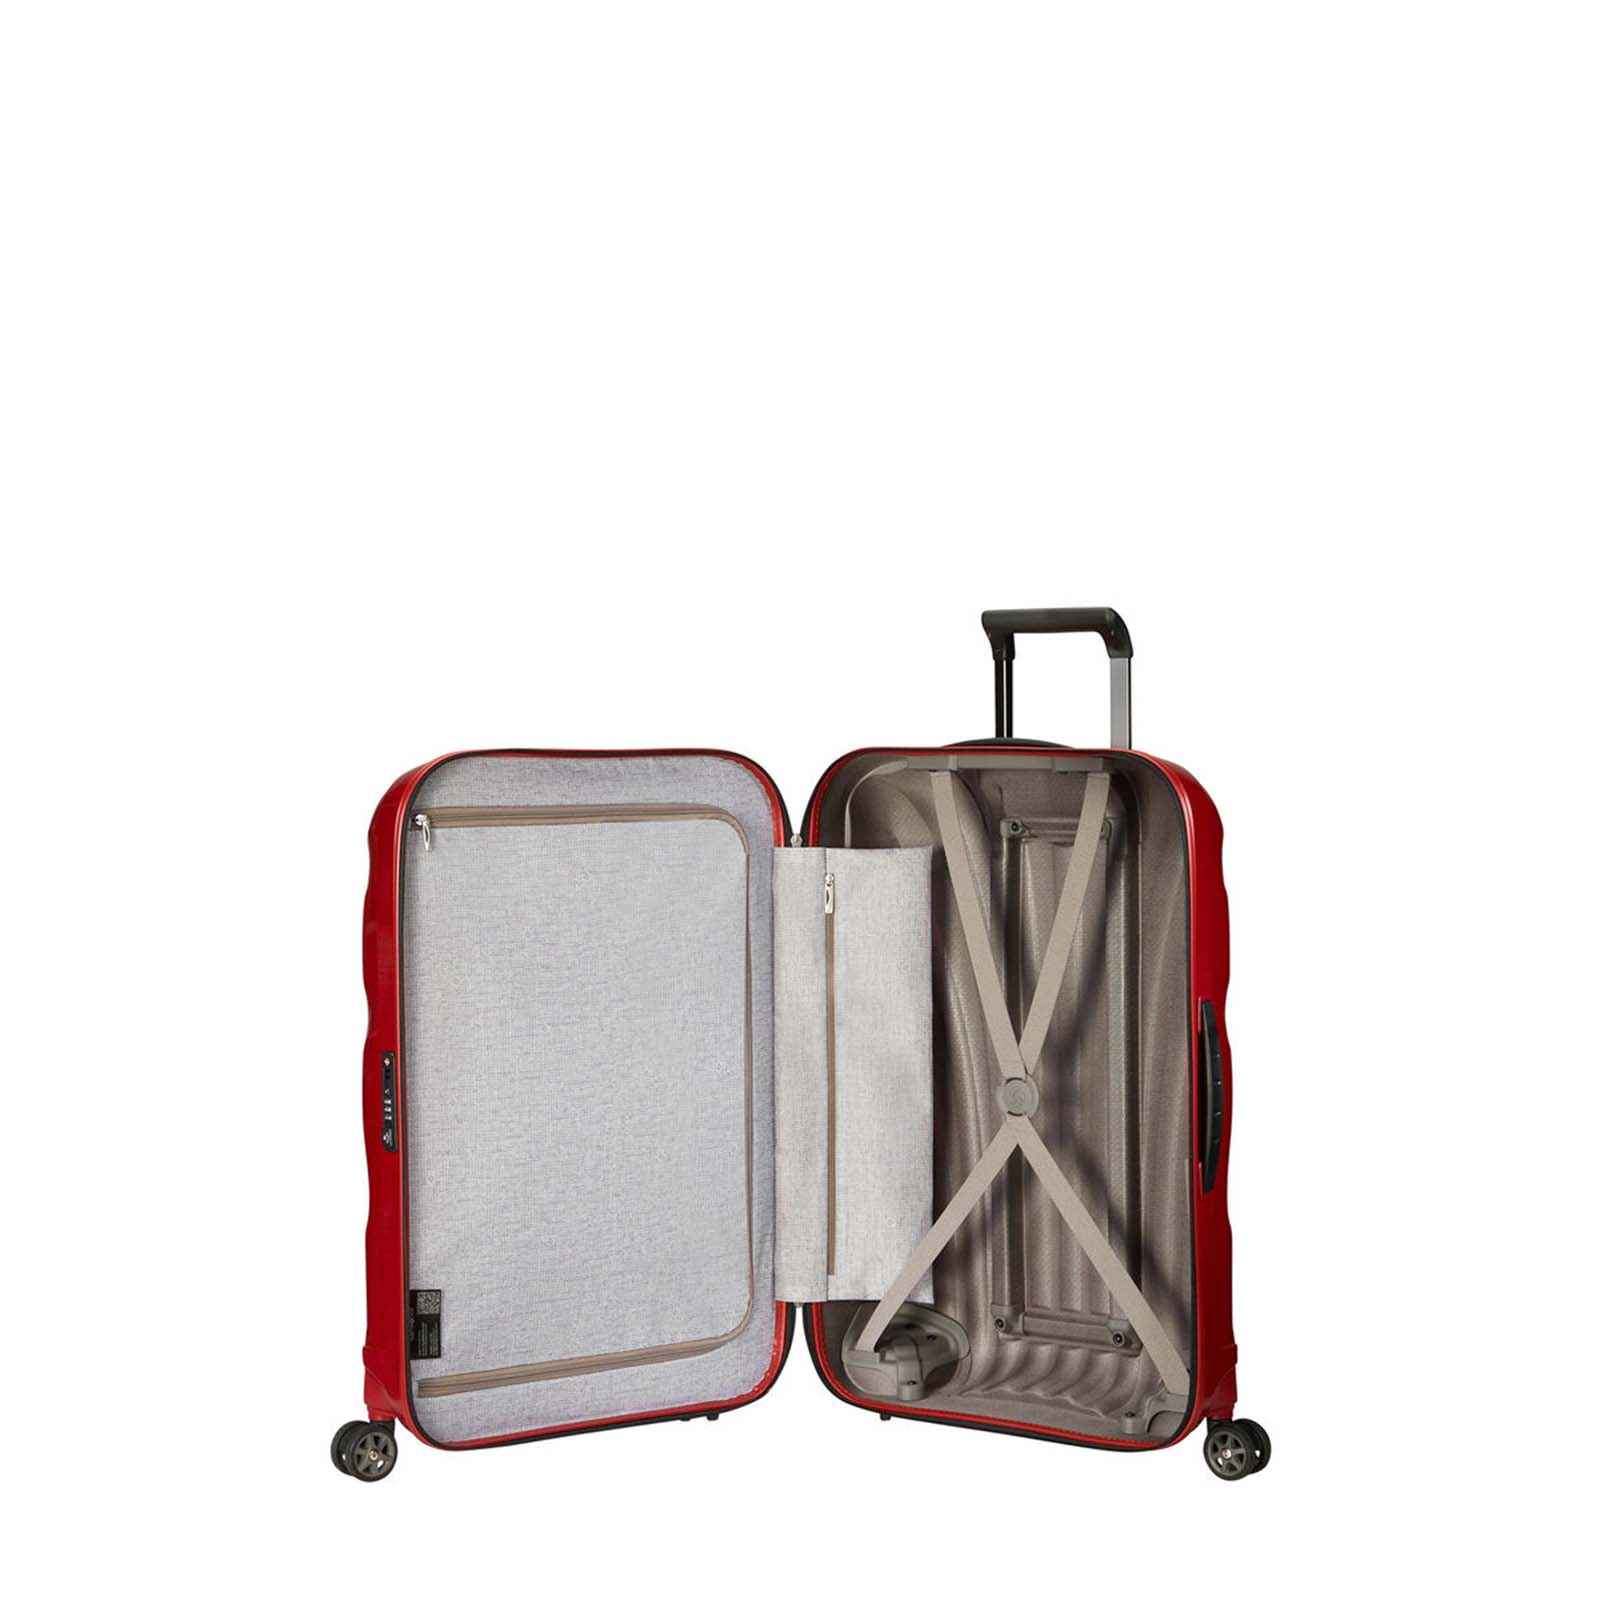 Samsonite-C-Lite-81cm-Suitcase-Chili-Red-Open